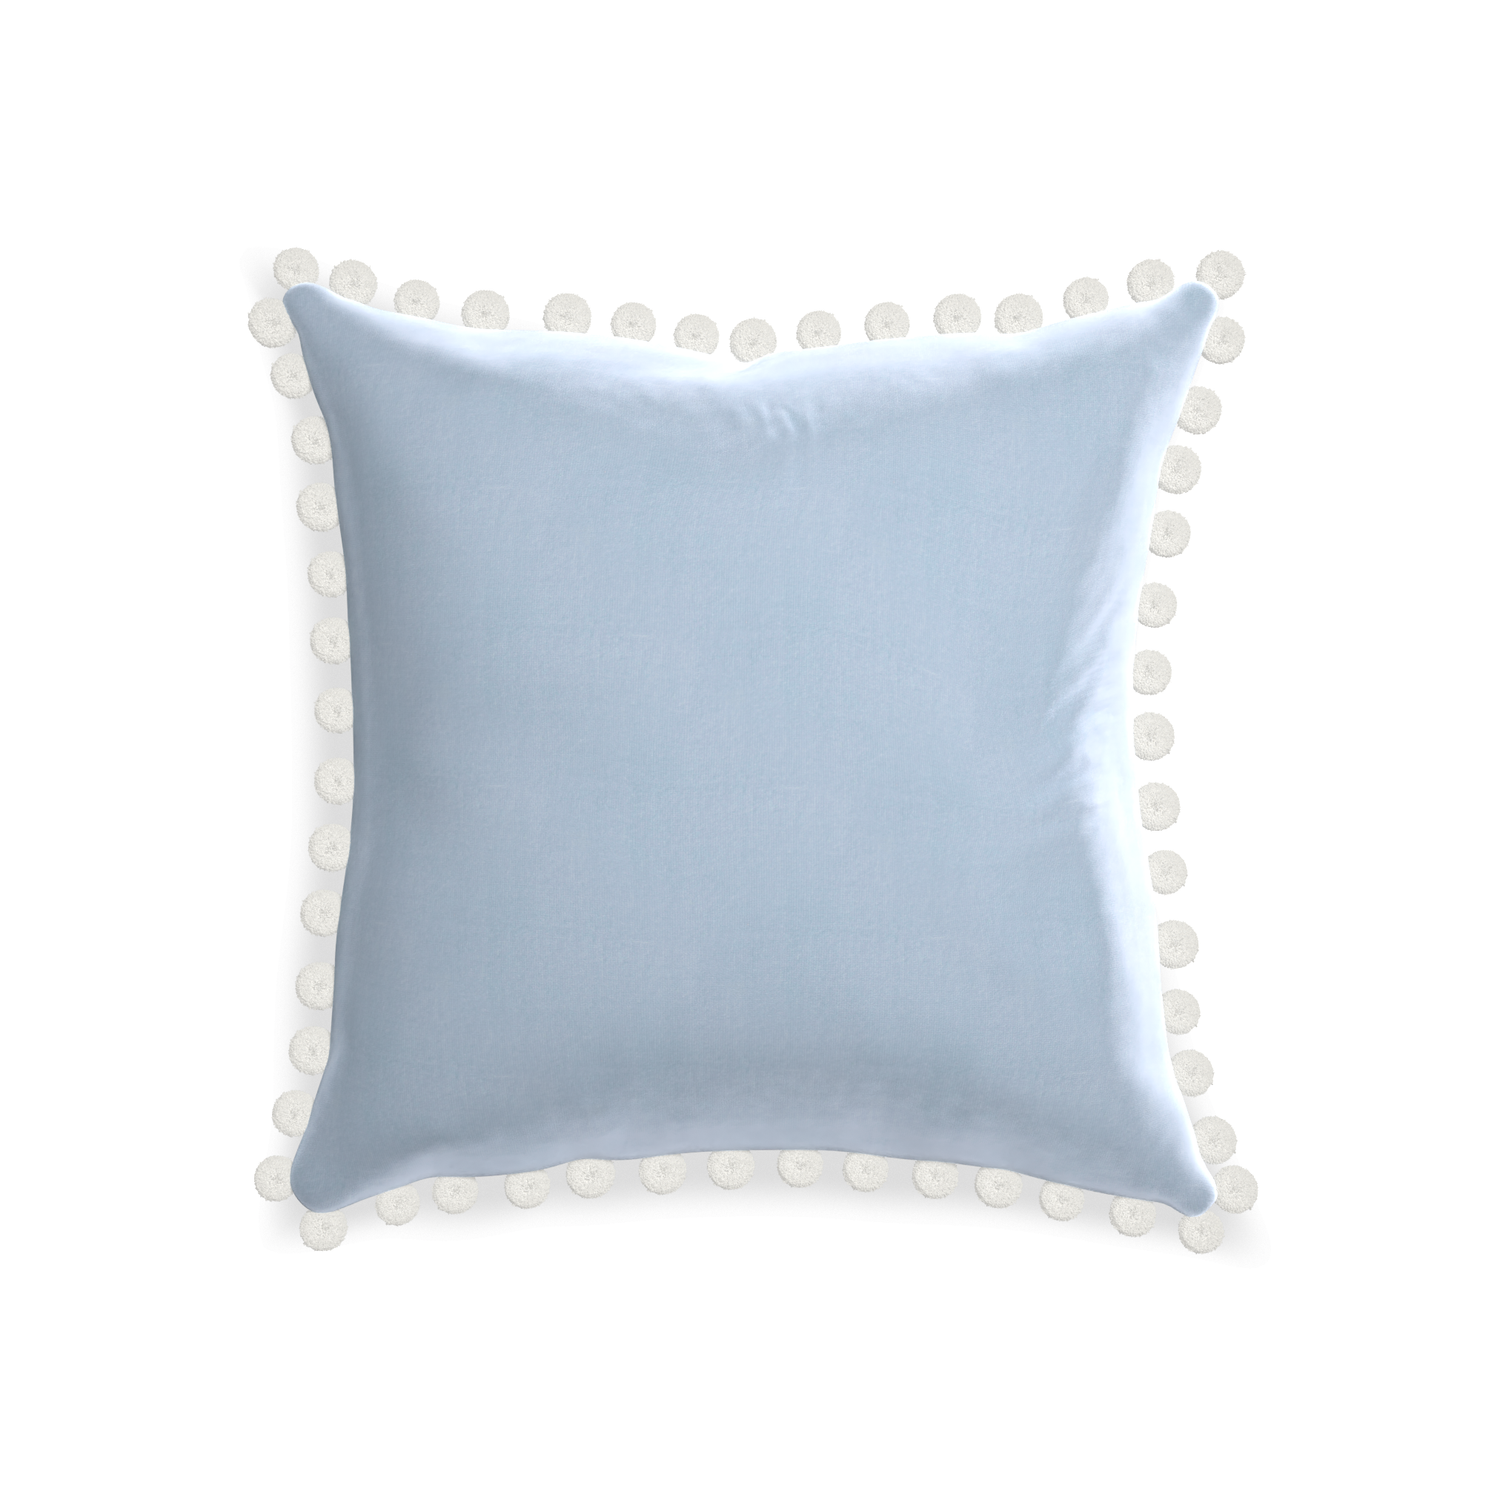 square light blue velvet pillow with white pom pom 